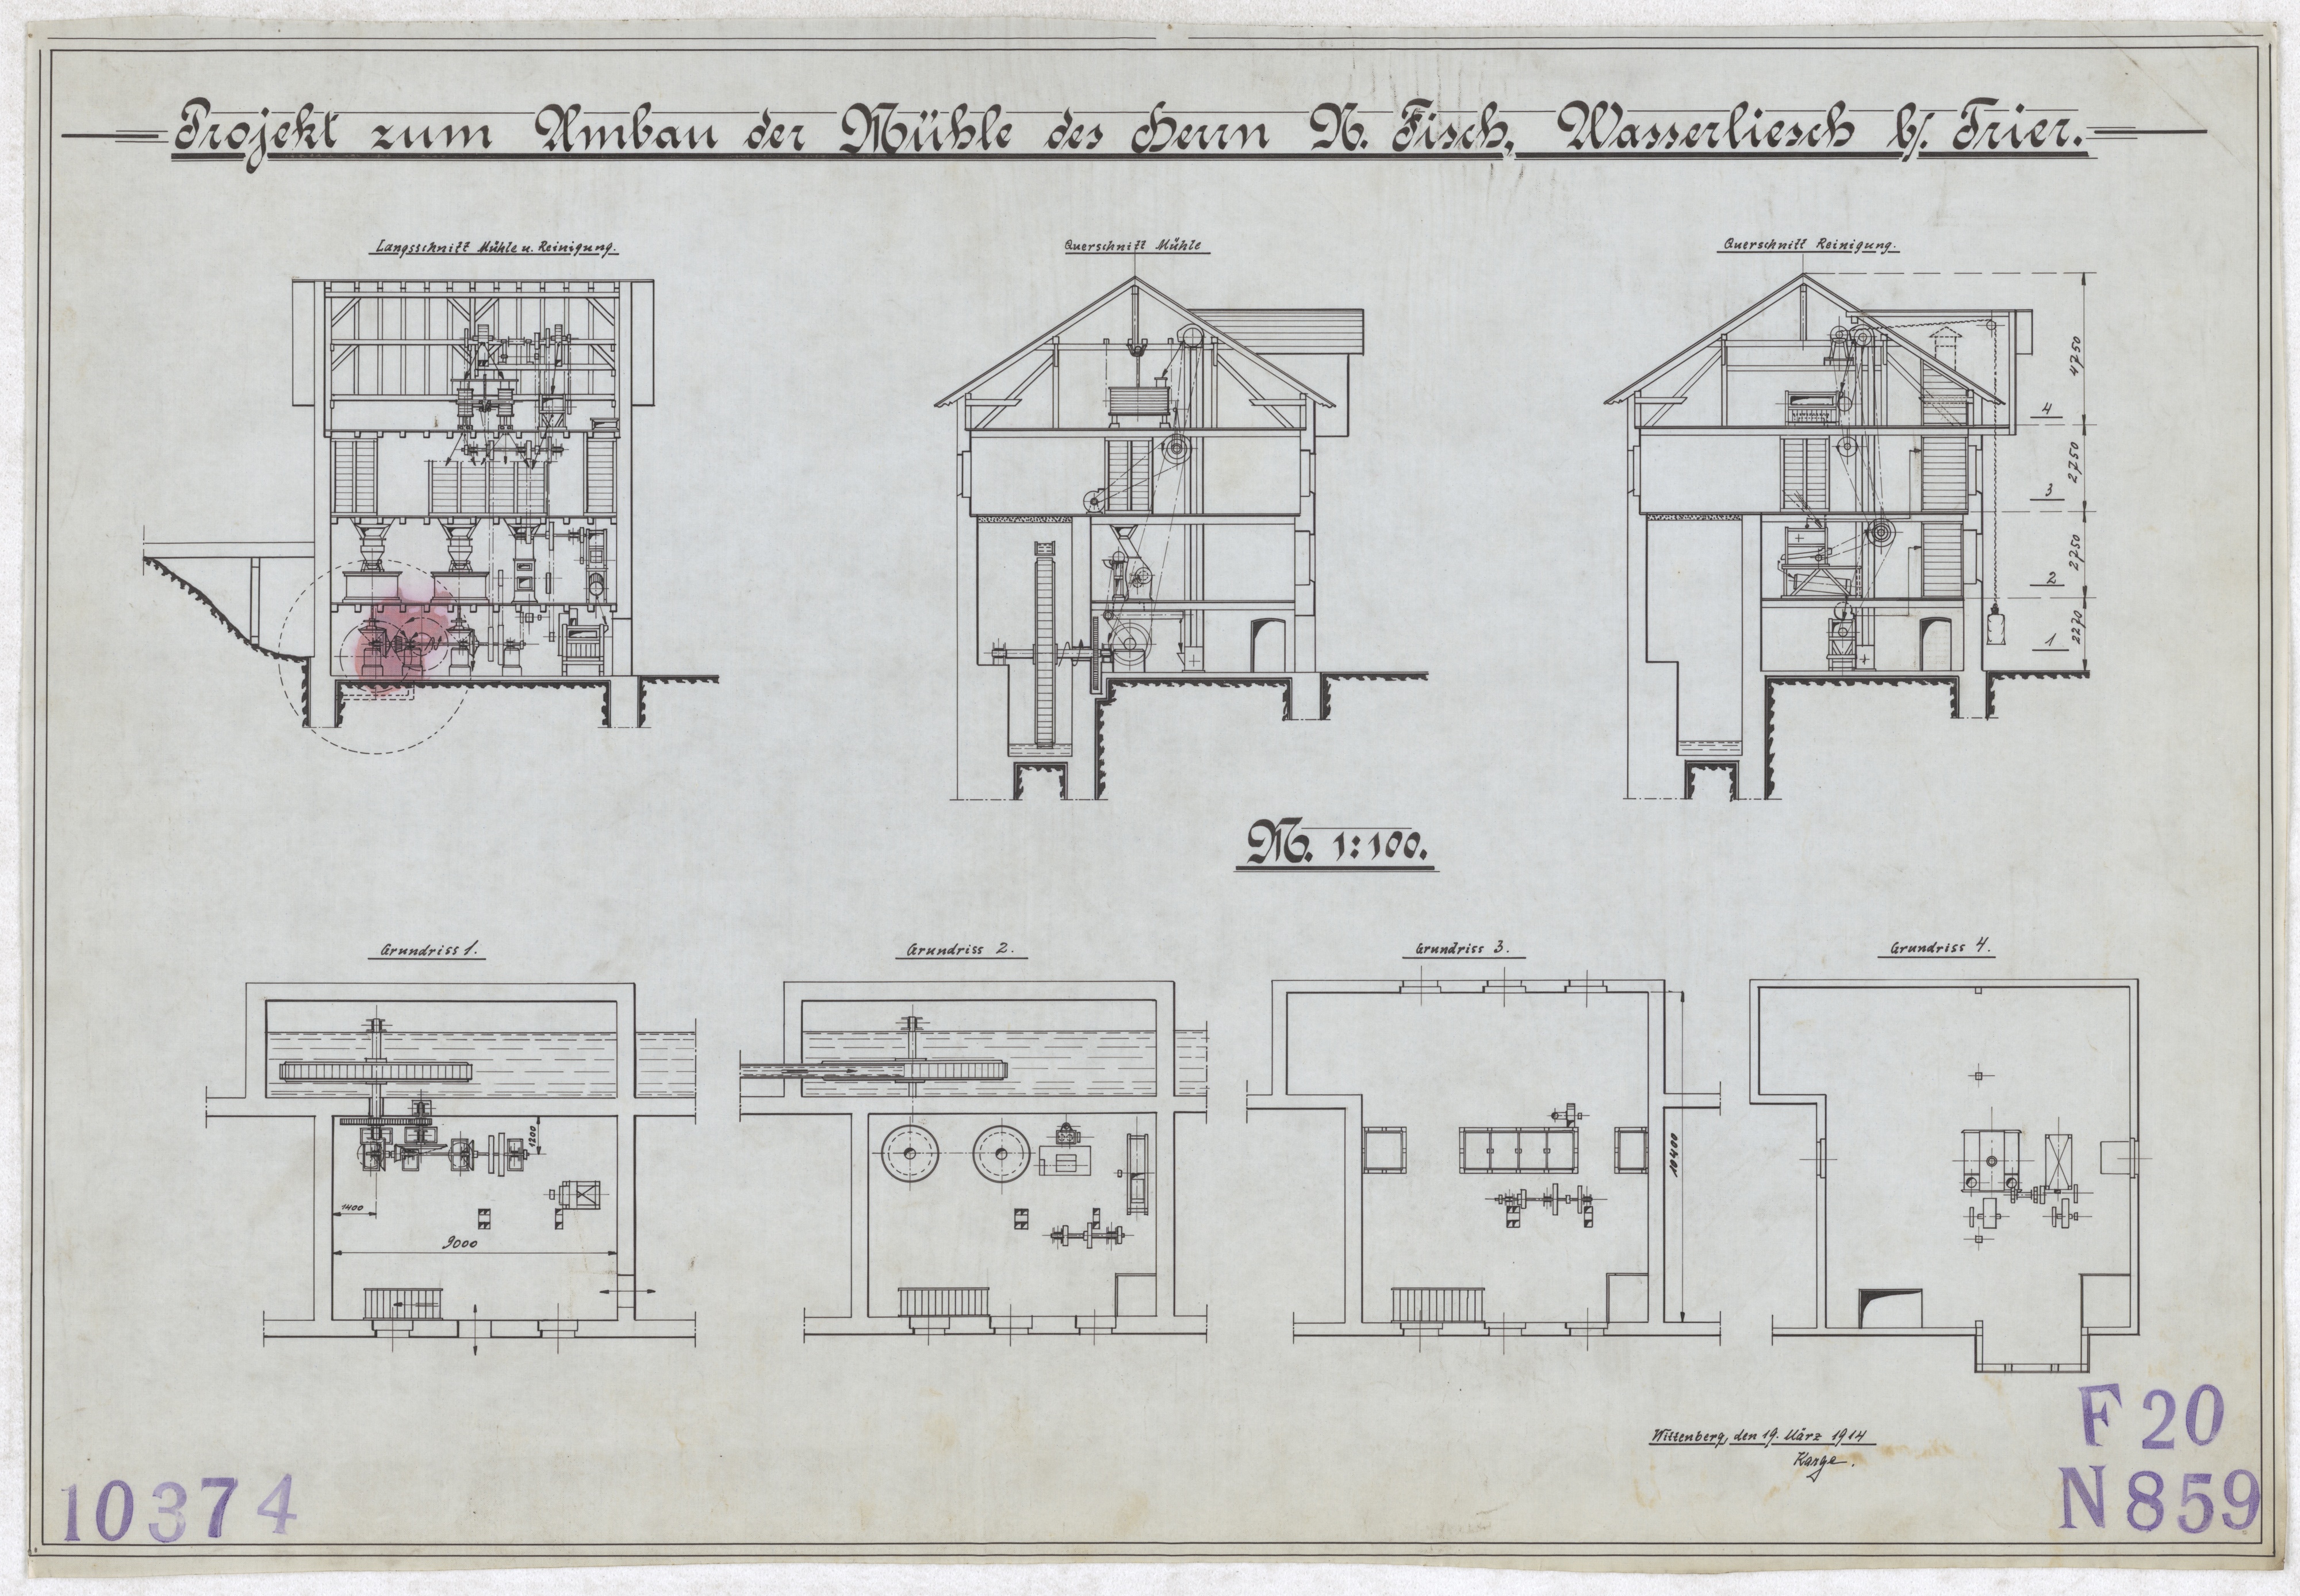 Technische Zeichnung : Projekt zum Umbau der Mühle des Herrn N. Fisch, Wasserliesch bei Trier (Stiftung Deutsches Technikmuseum Berlin CC BY-SA)